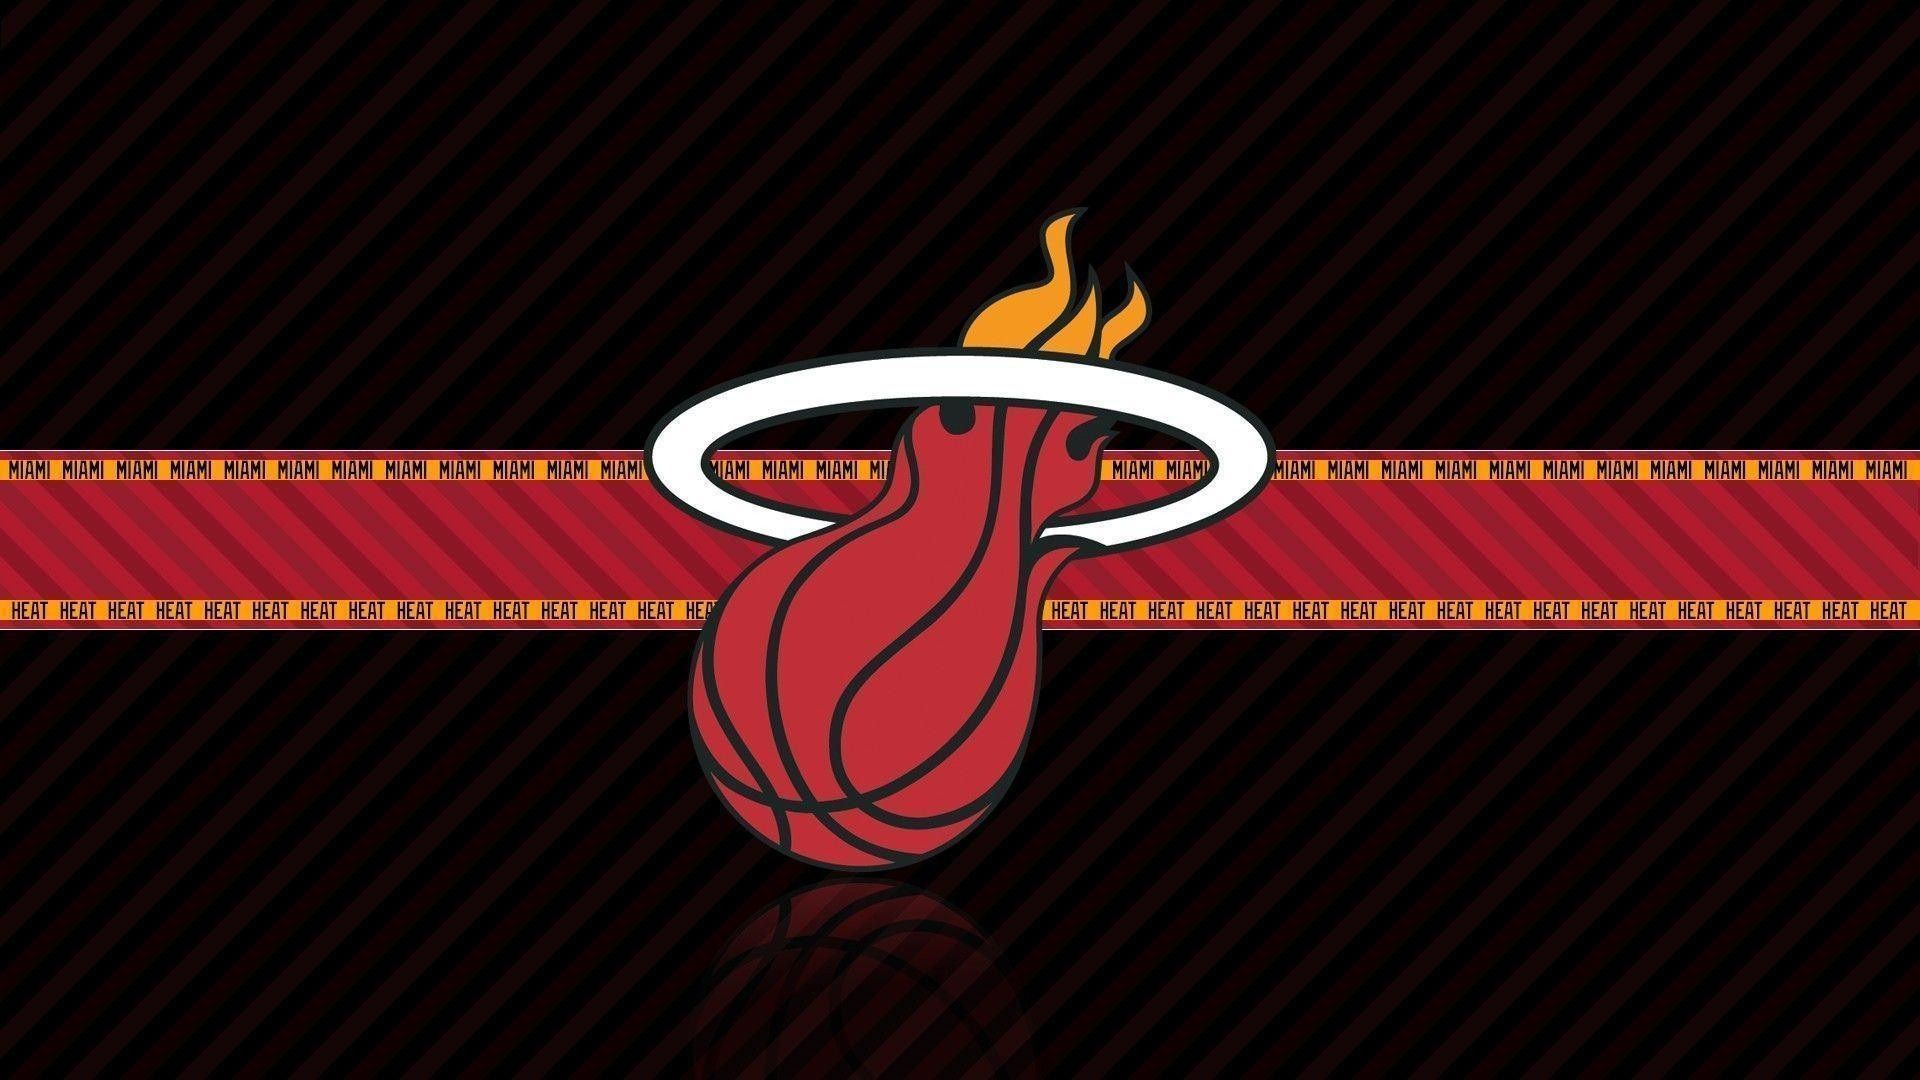 HD Miami Heat Wallpaper. Miami heat logo, Miami heat, Miami